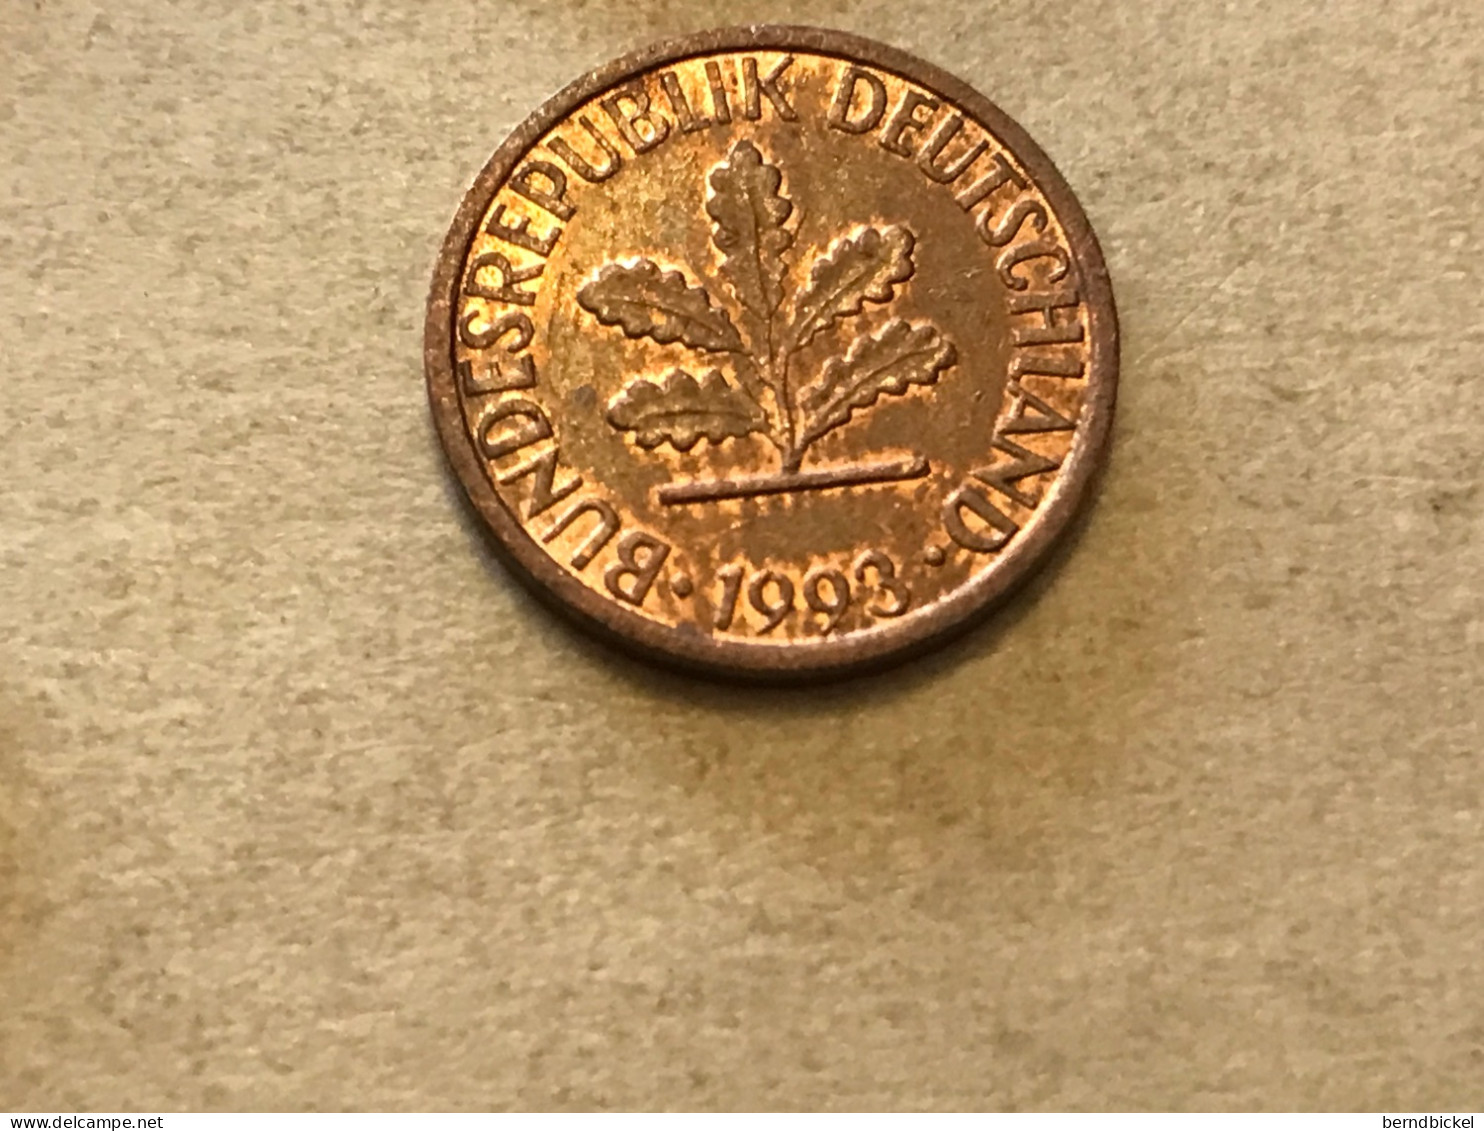 Münze Münzen Umlaufmünze Deutschland BRD 1 Pfennig 1993 Münzzeichen F - 1 Pfennig